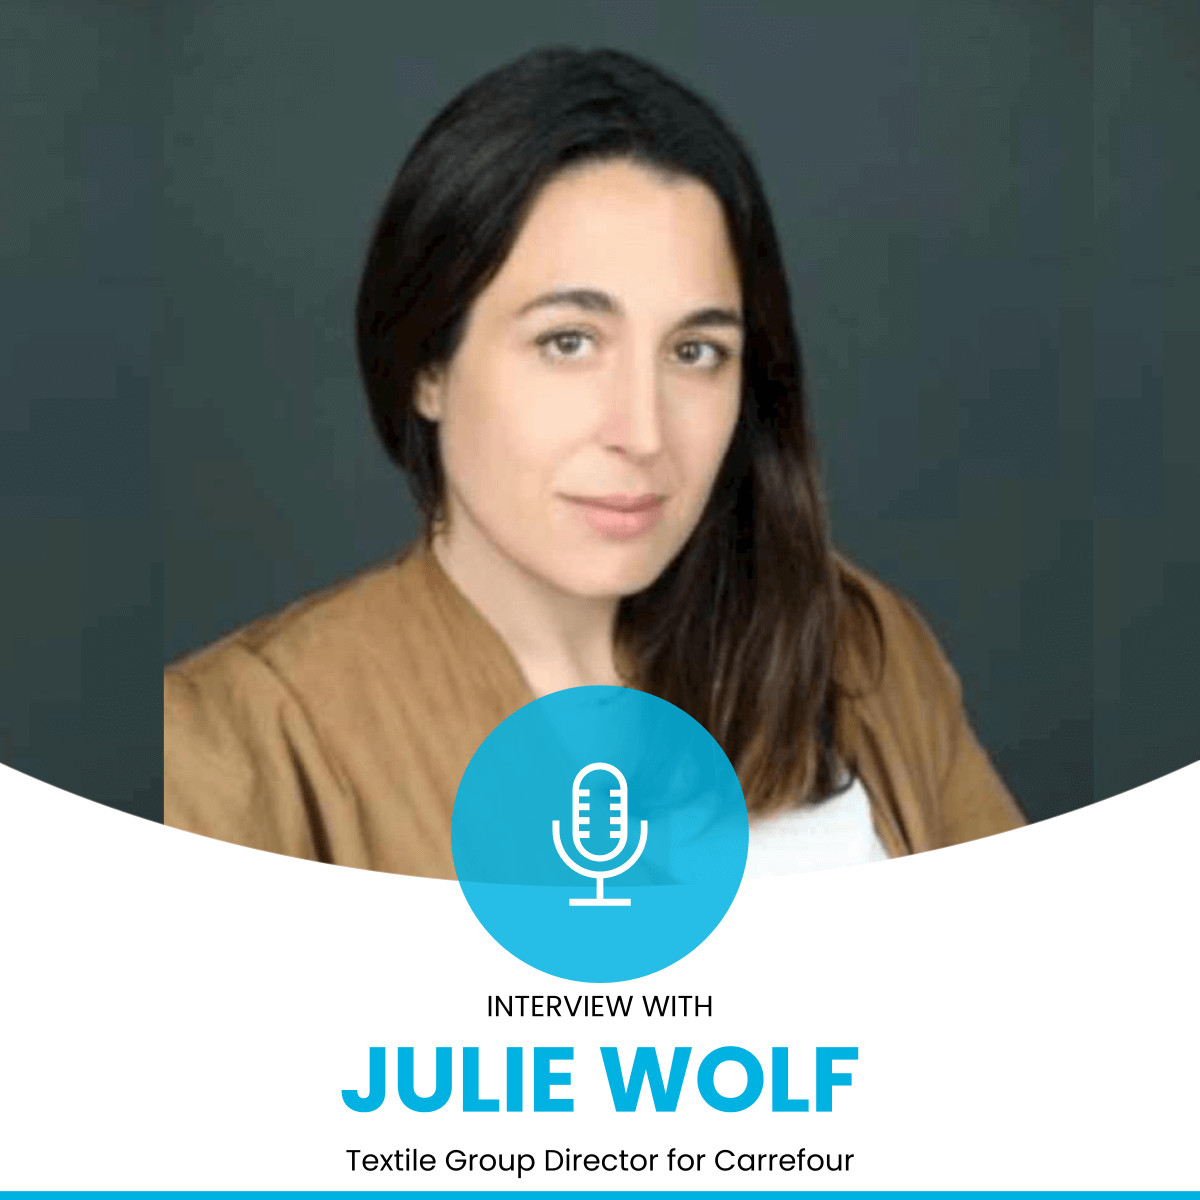 Julie Wolf: 